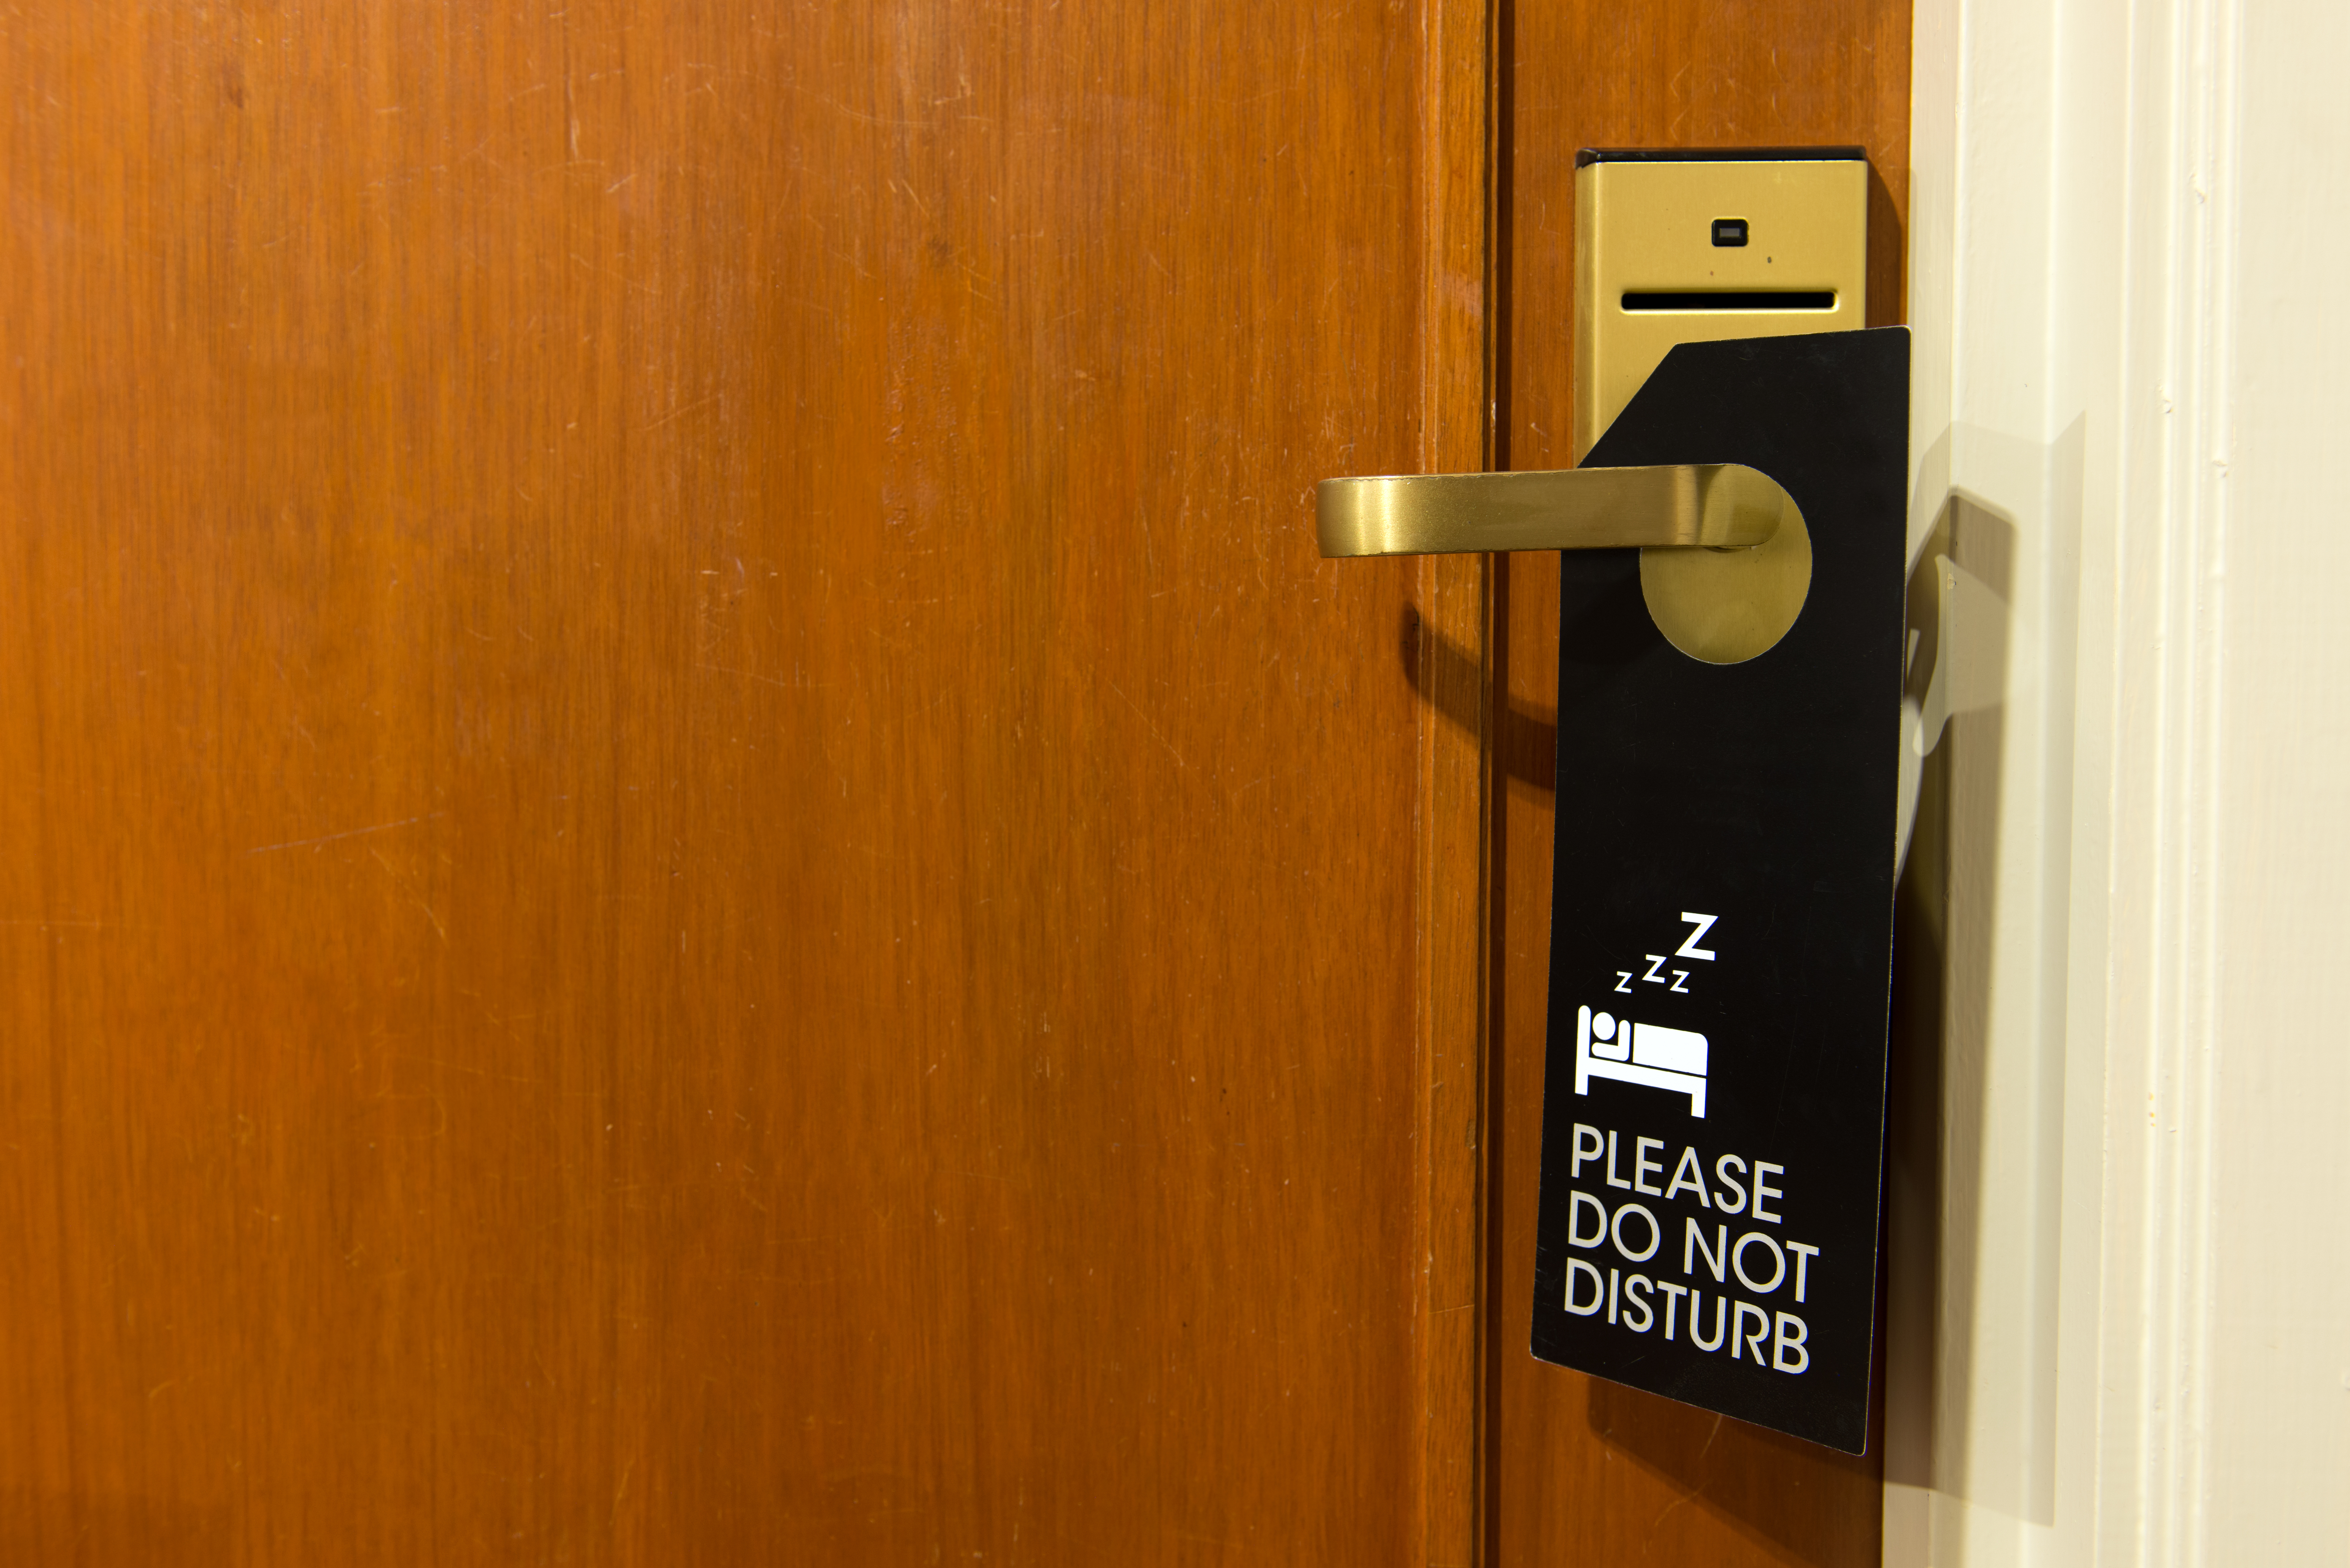 Do not disturb sign hang on door knob. | Source: Shutterstock